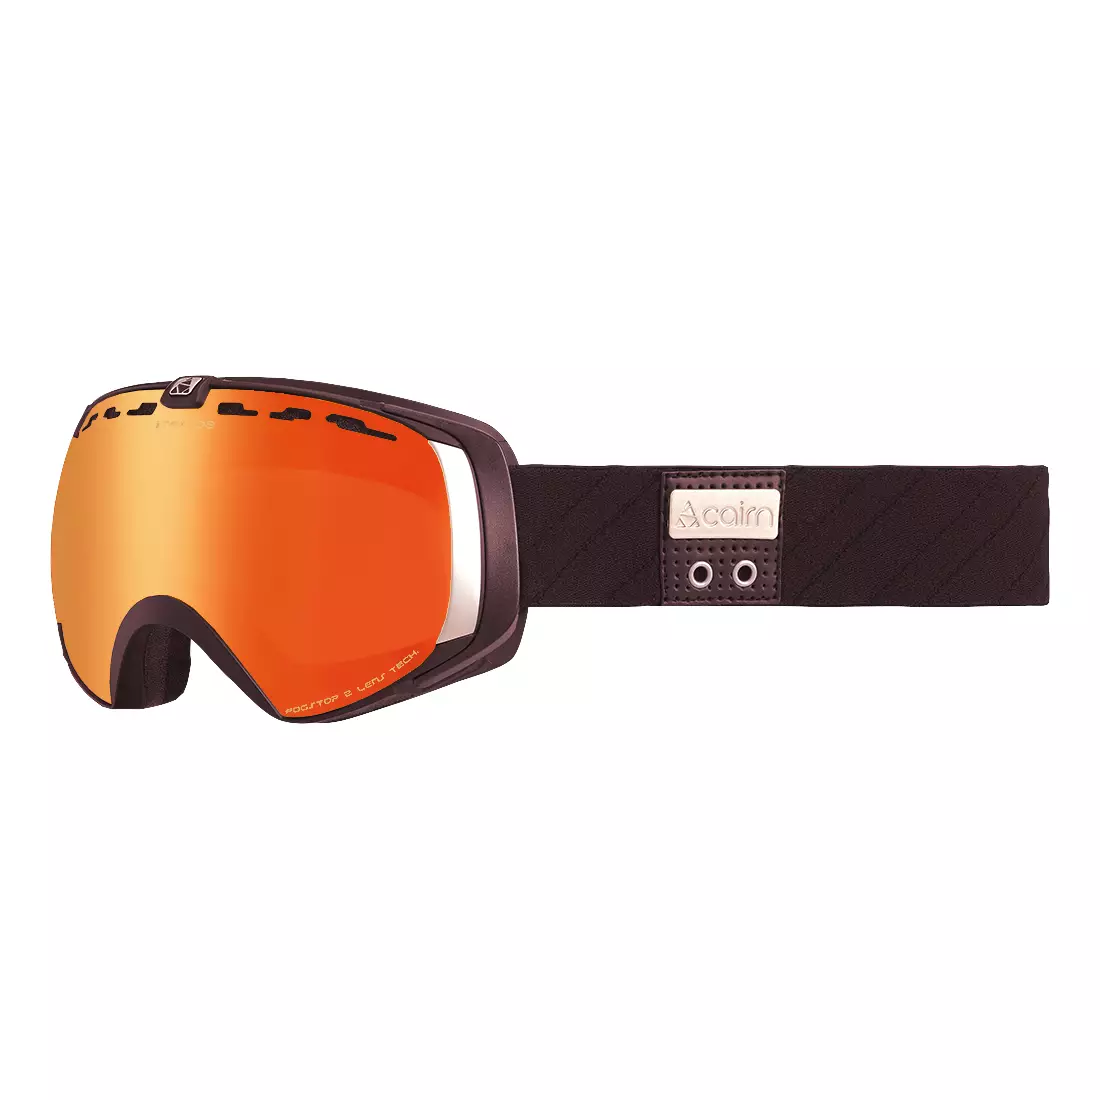 CAIRN STRATOS SPX3000 IUM cyklistické brýle, oranžový